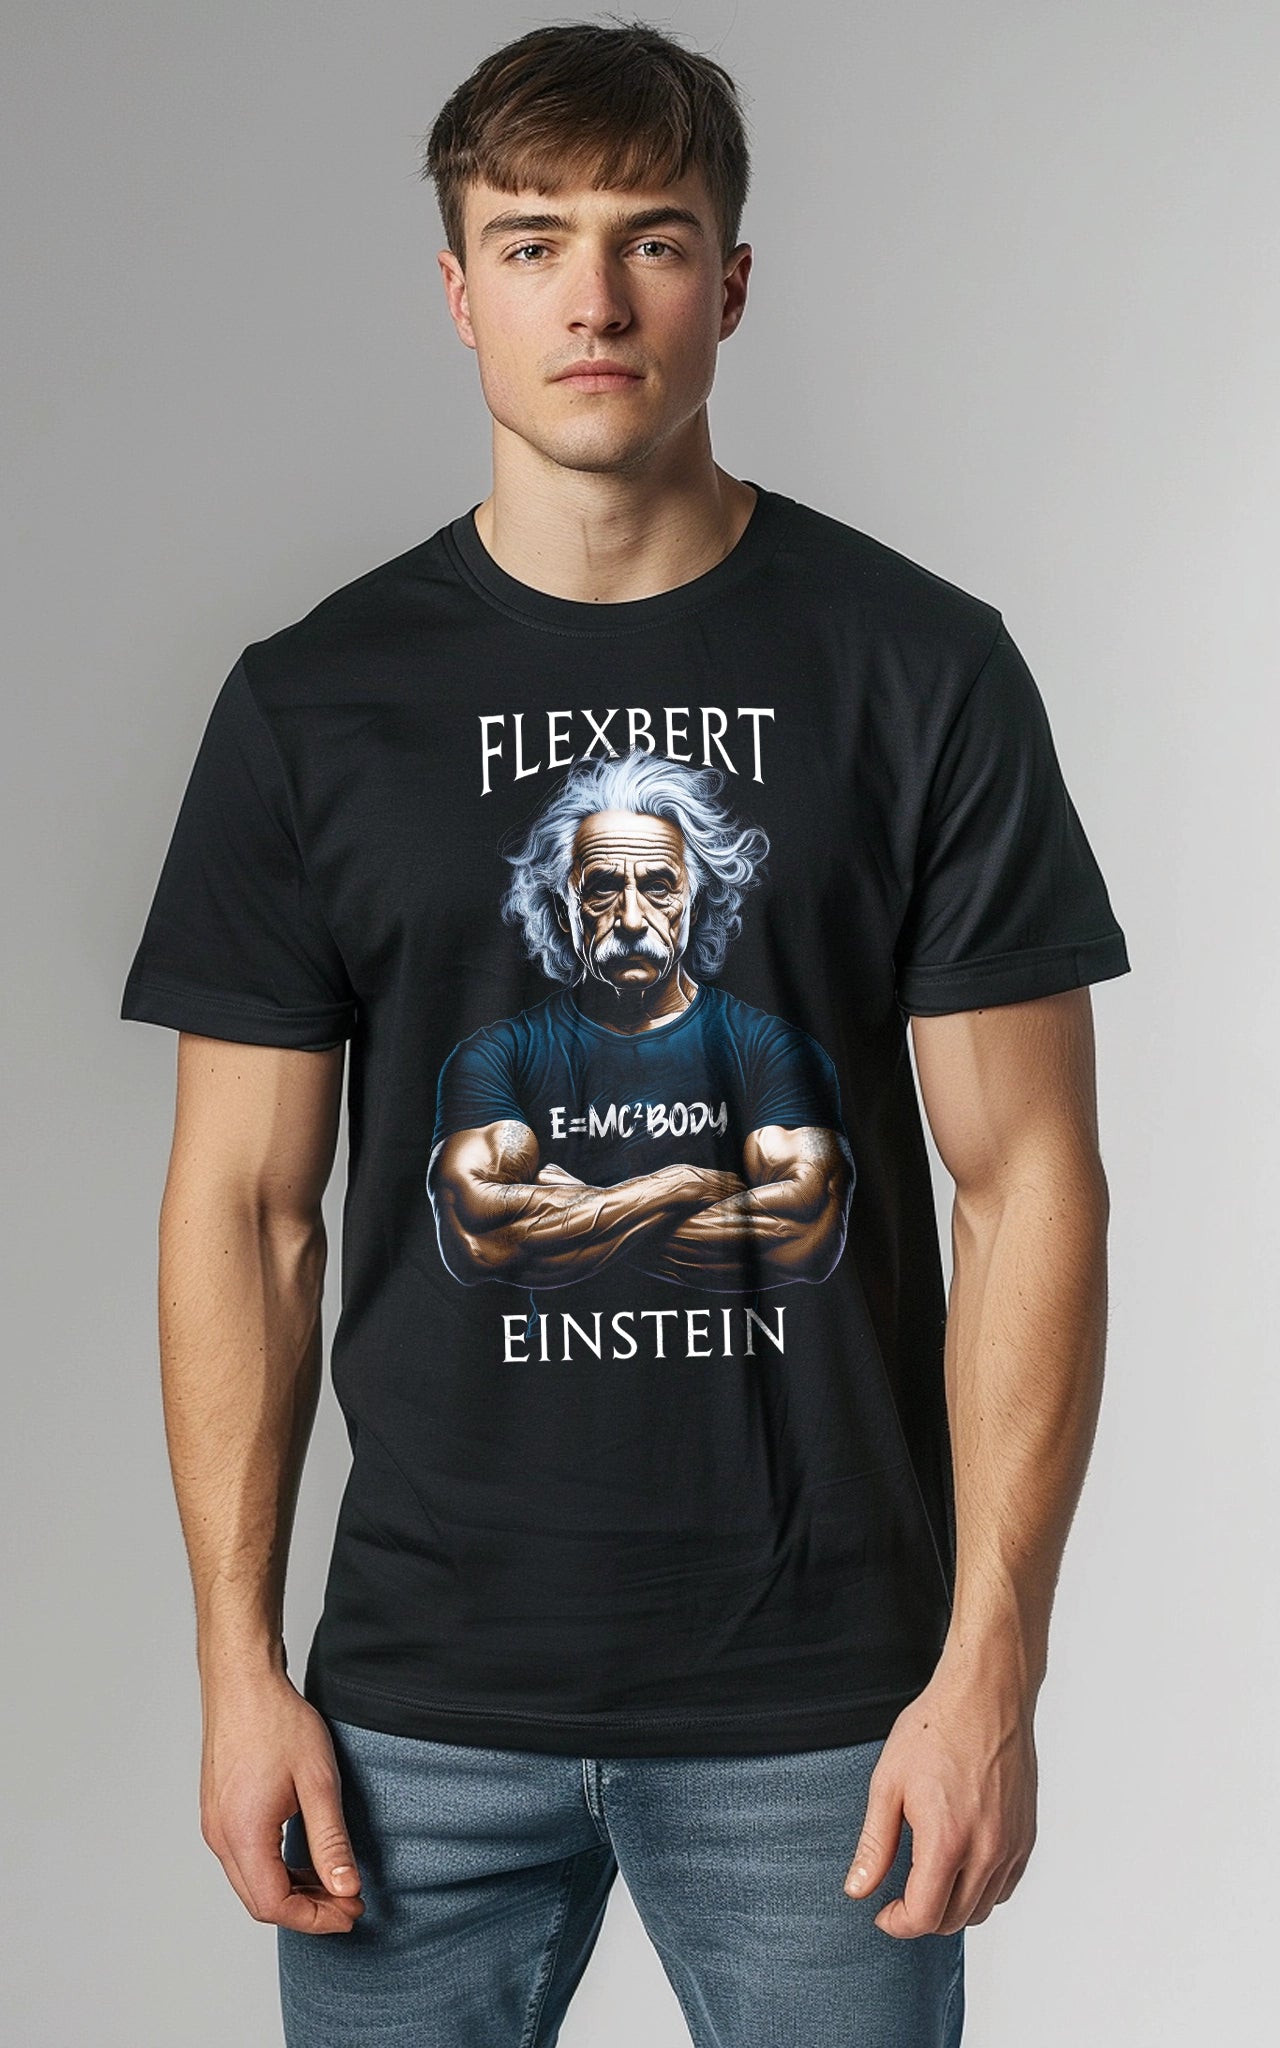 unique a as T-Shirt: Albert Einstein JOE – humor bodybuilder MOLESE muscular Einstein Flexbert